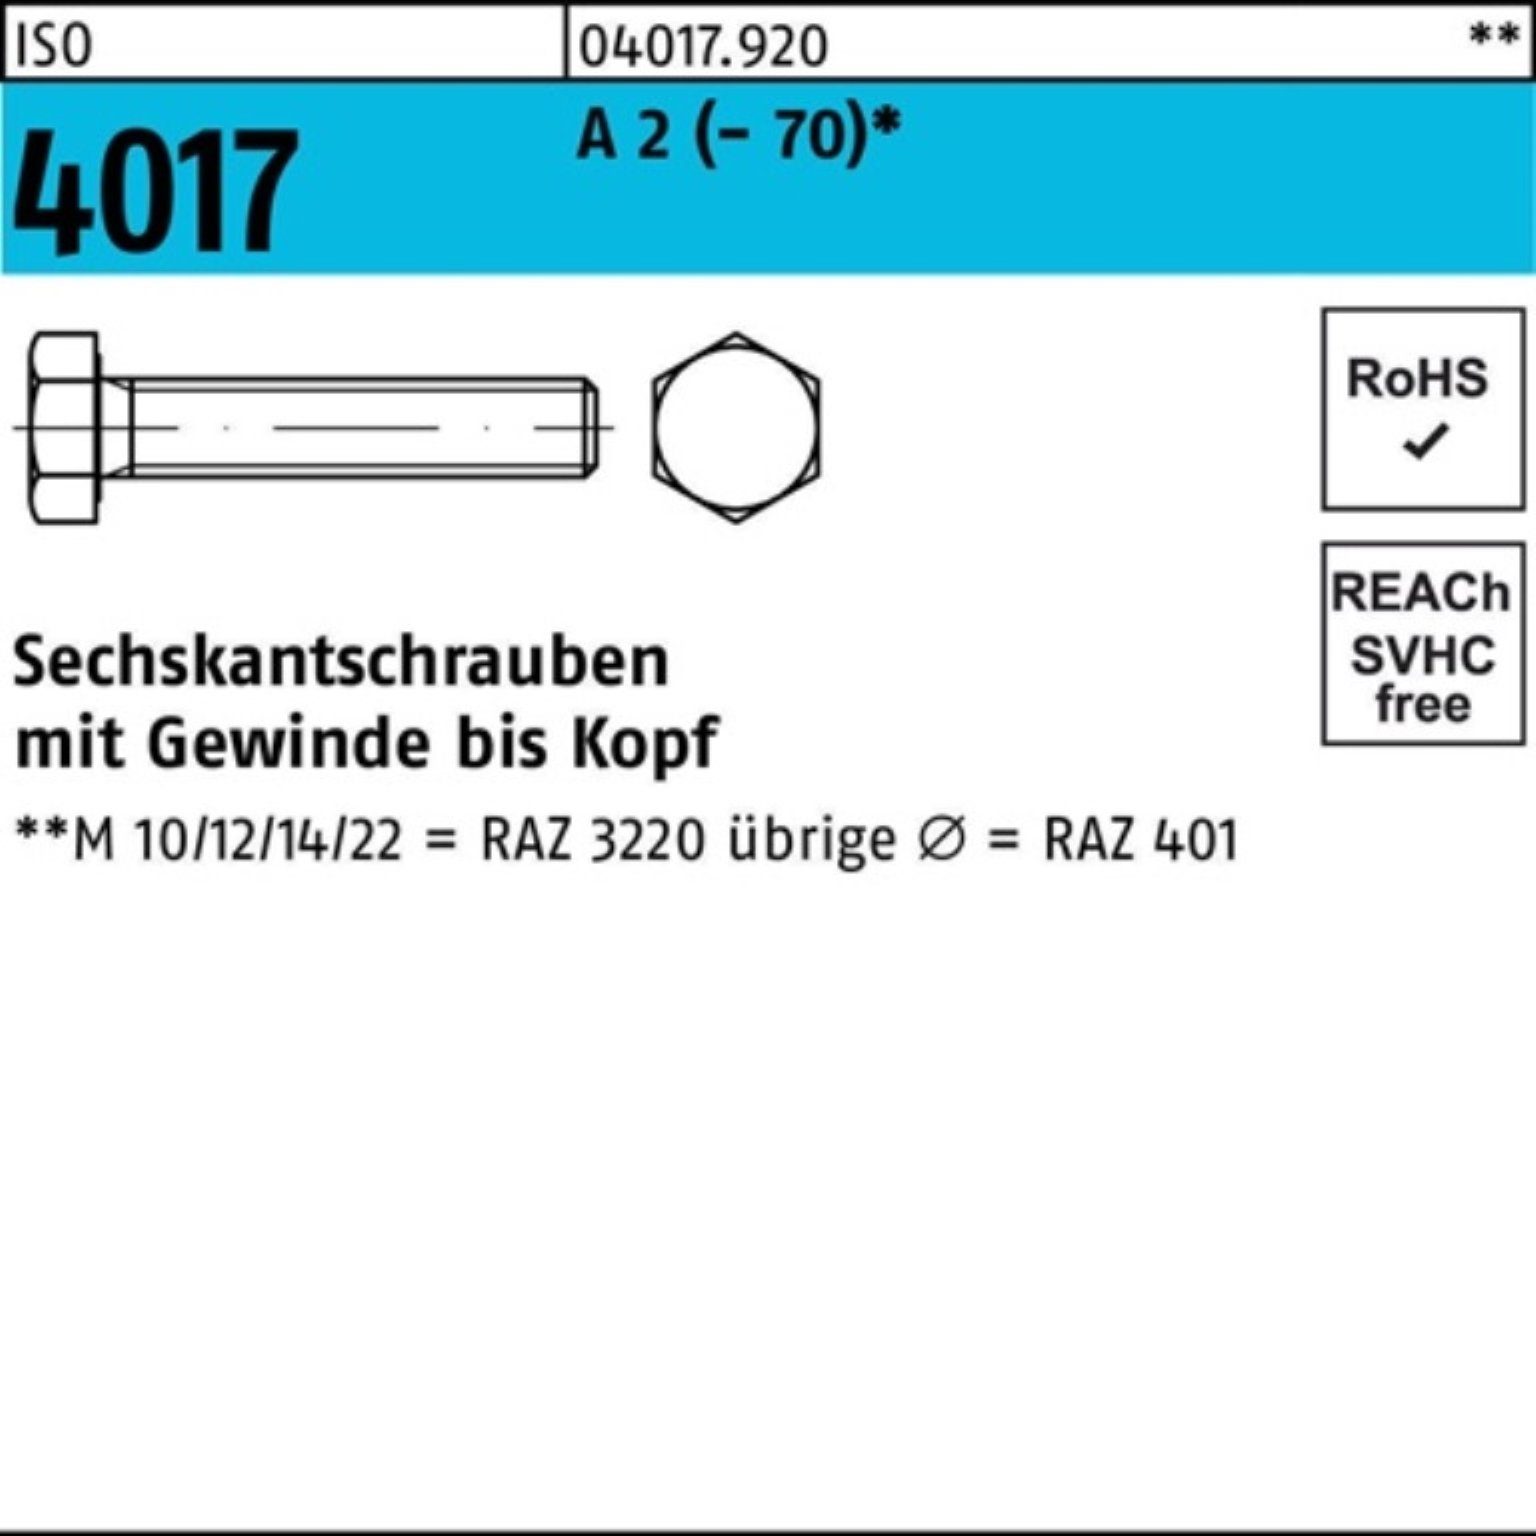 Sechskantschraube 30 100 (70) 2 Stück VG Sechskantschraube Pack 4017 M10x A ISO Bufab 100er